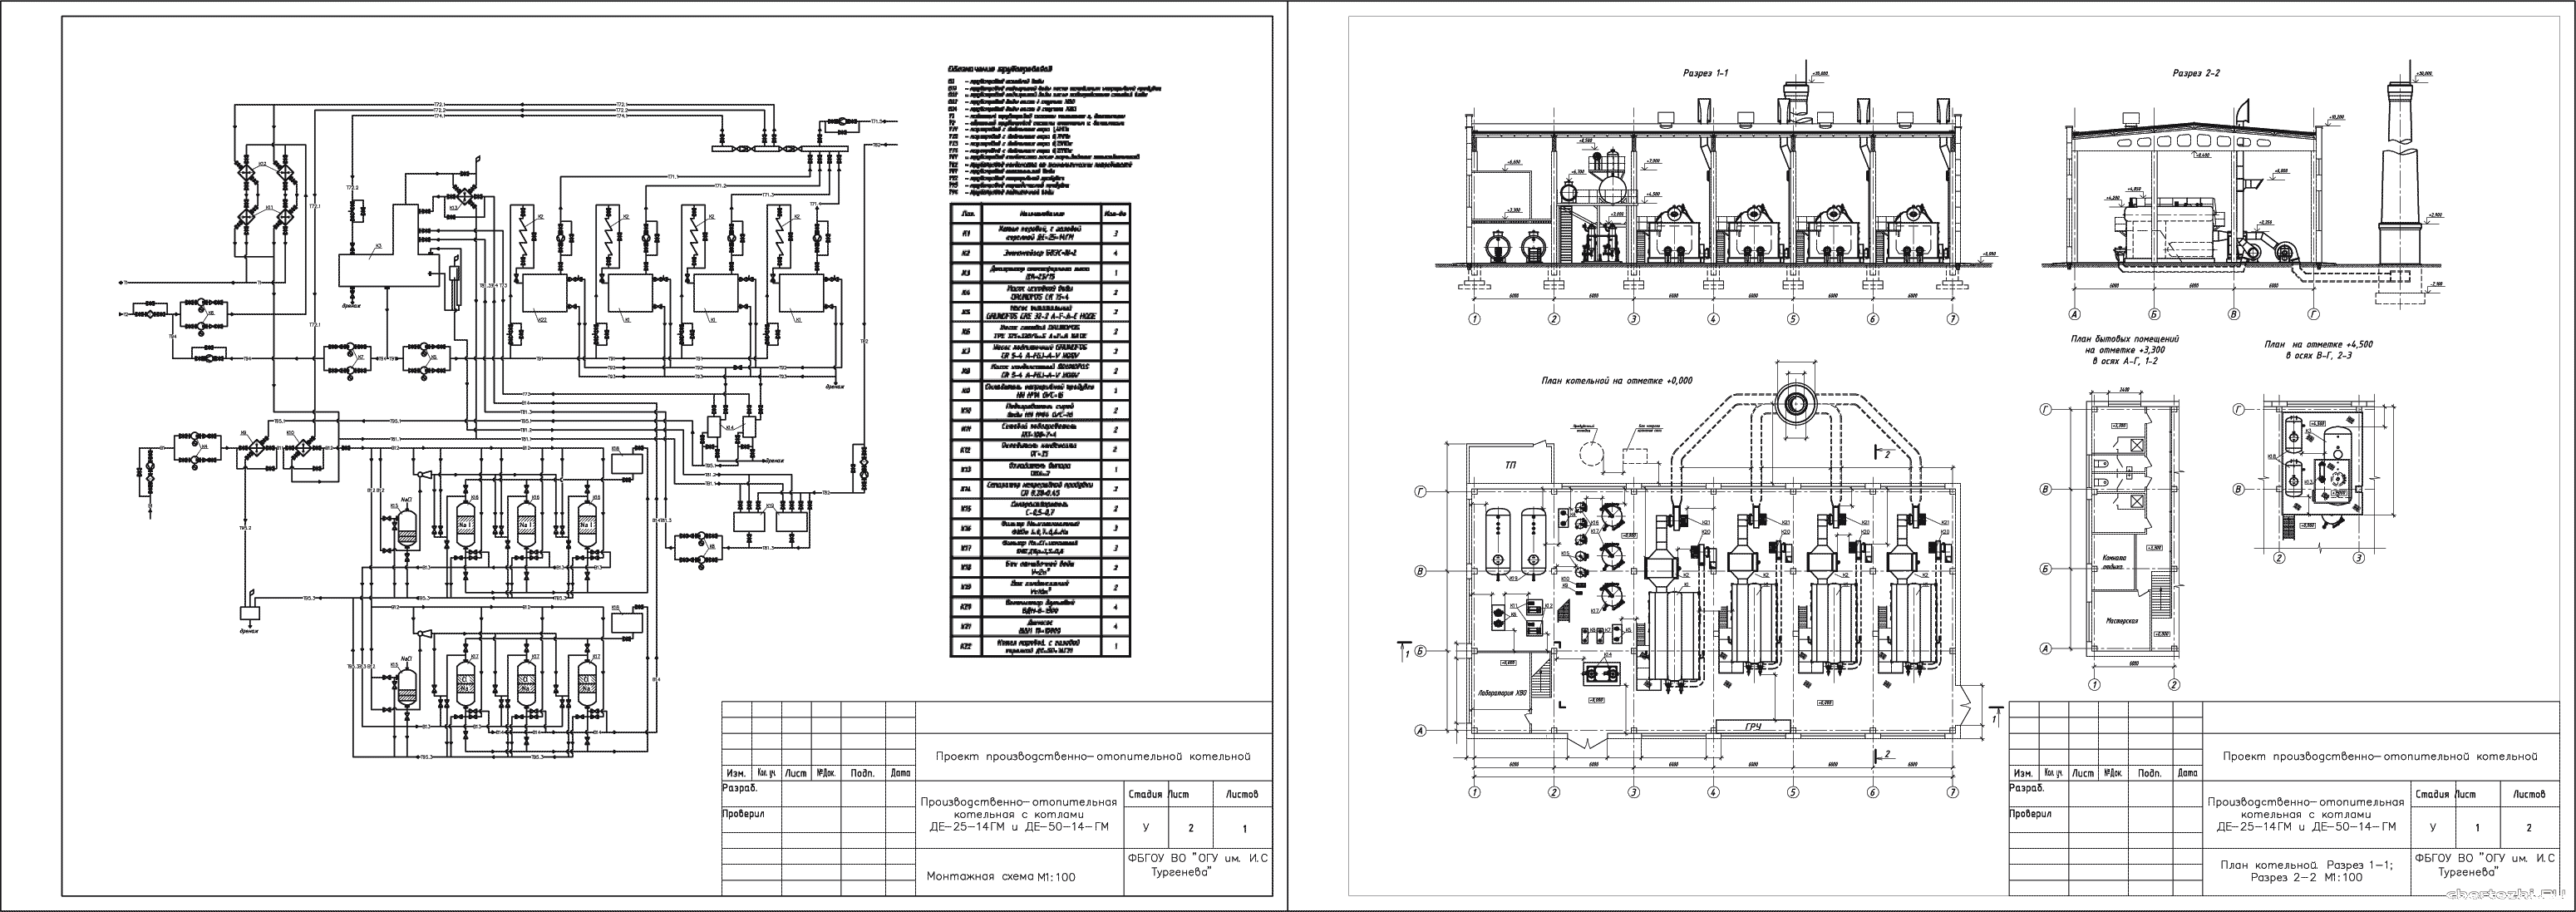 Курсовой проект - Расчет тепловой схемы производственно-отопительной котельной с паровыми котлами низкого давления ДЕ-25-14 ГМ и ДЕ-50-14 ГМ